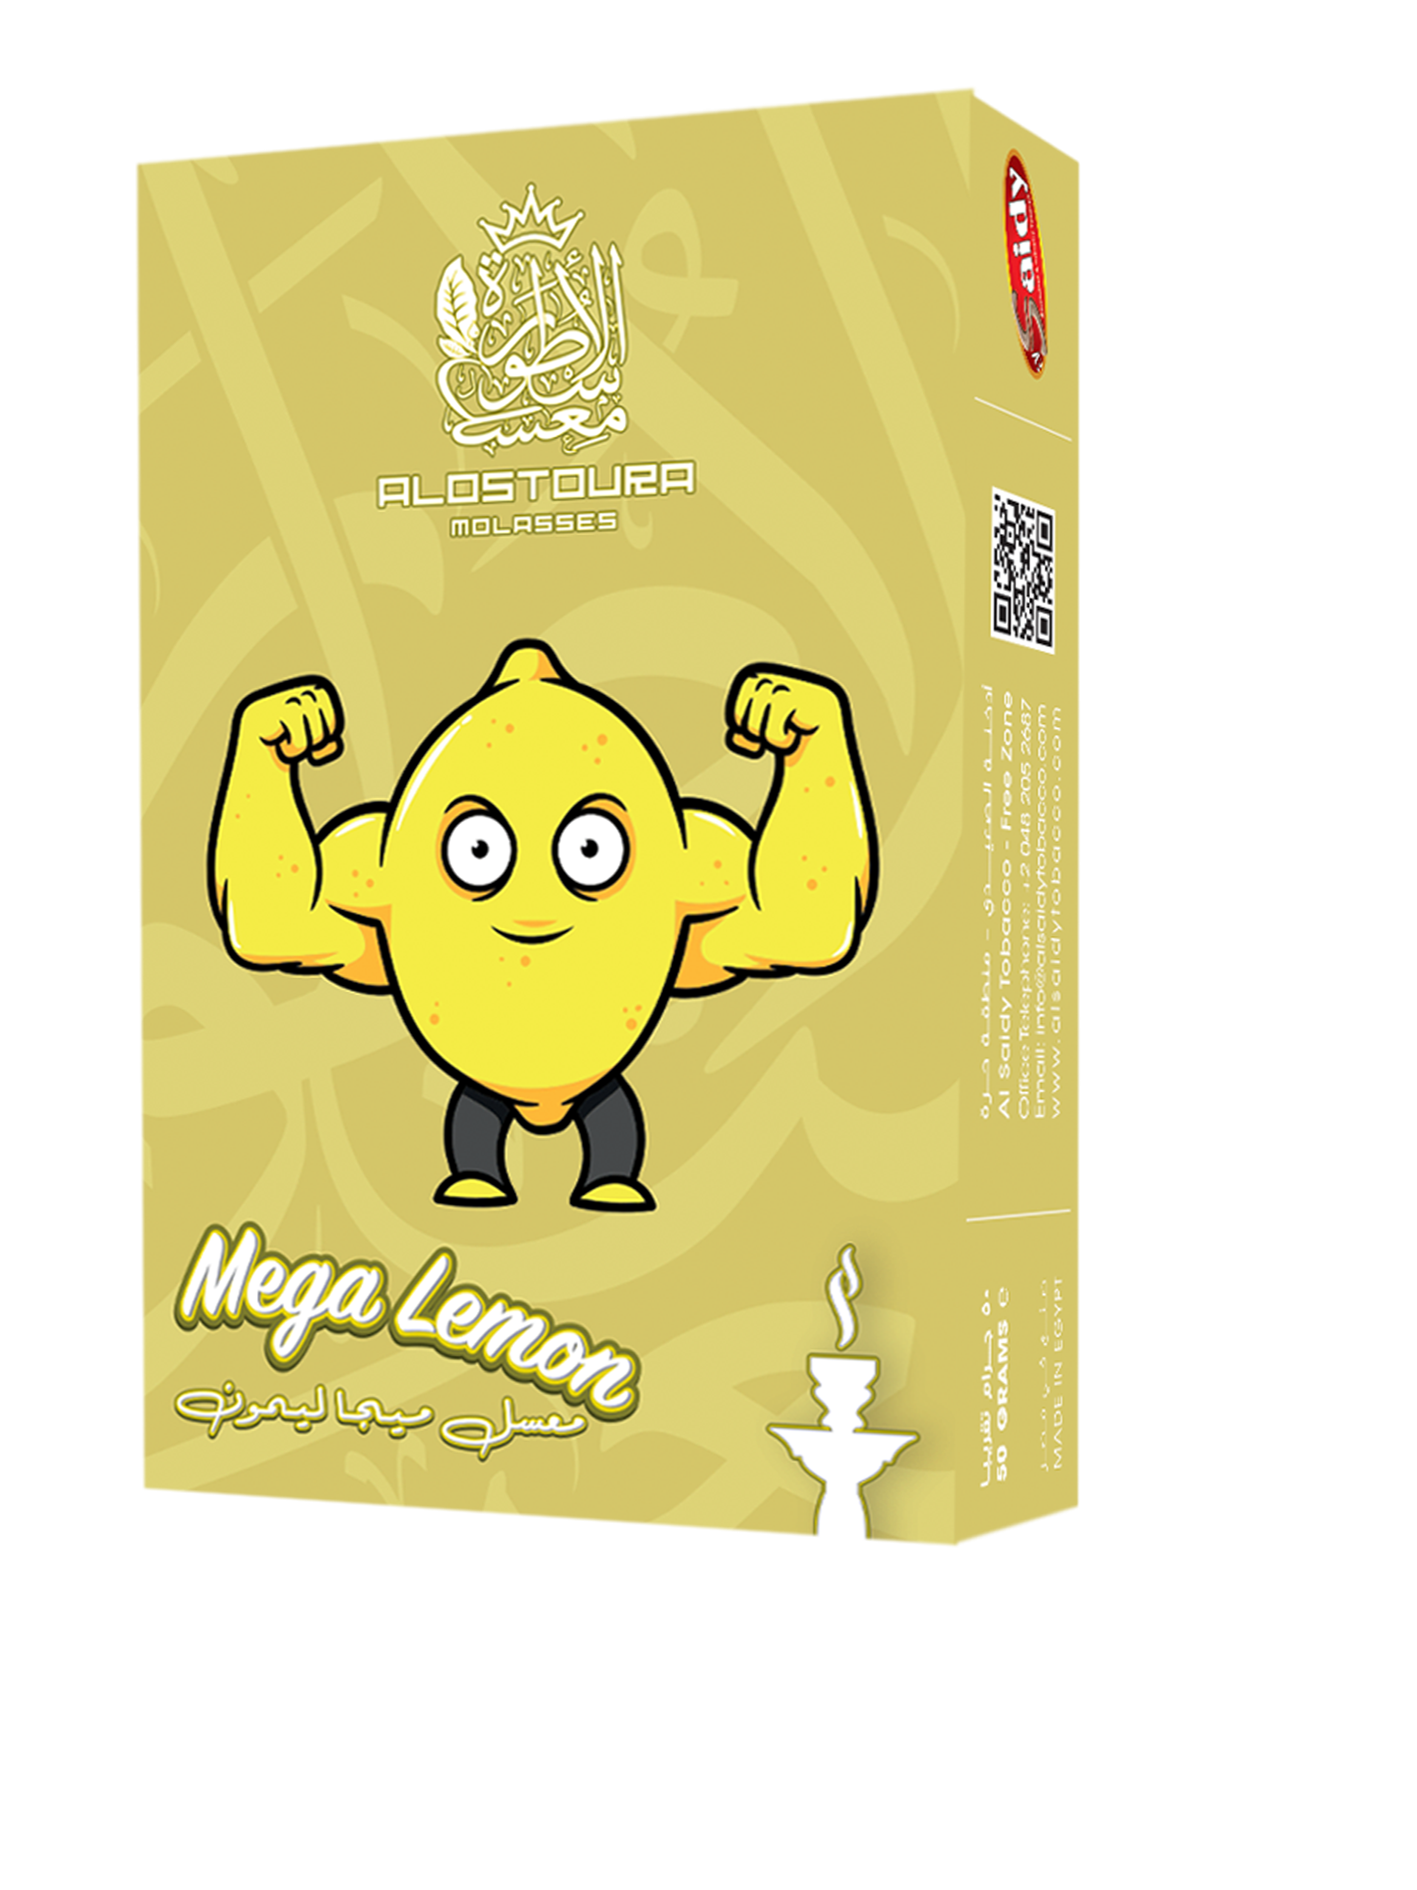 Mega lemon